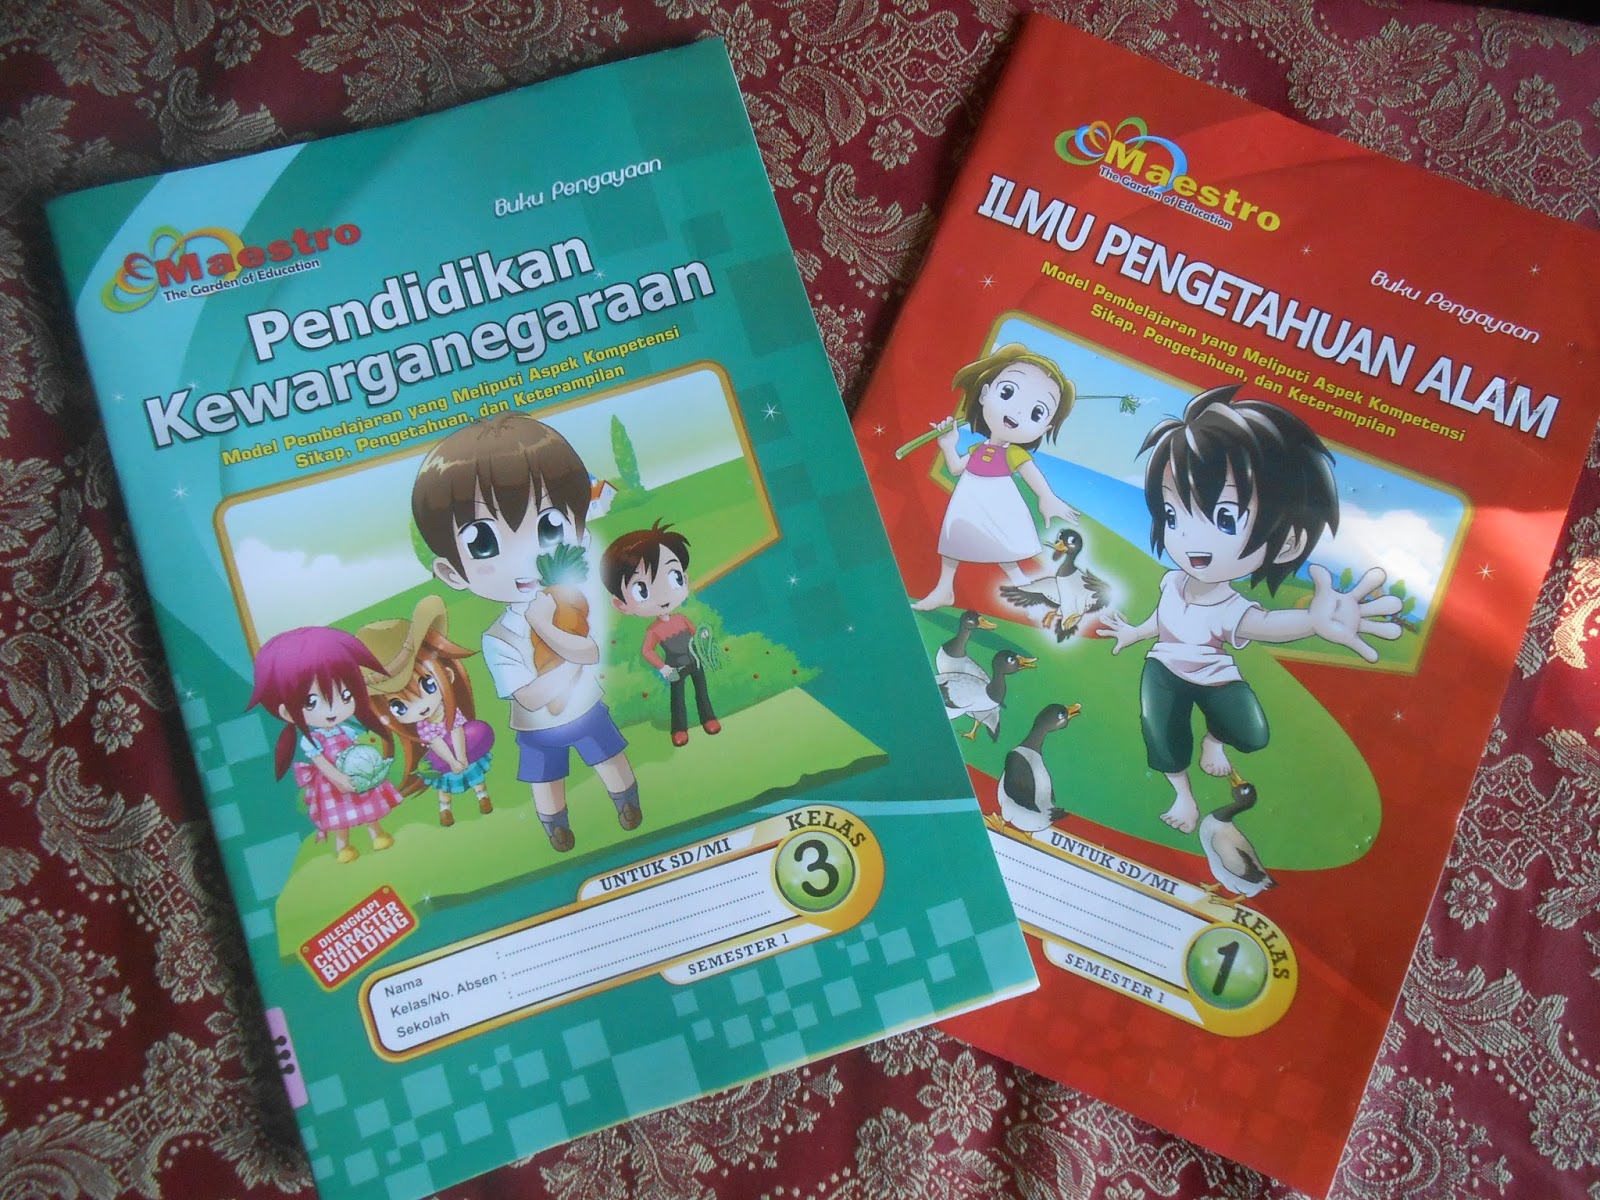 PITUTUR Bahasa Jawa Lokal Yogyakarta karya Drs Haryono Dkk